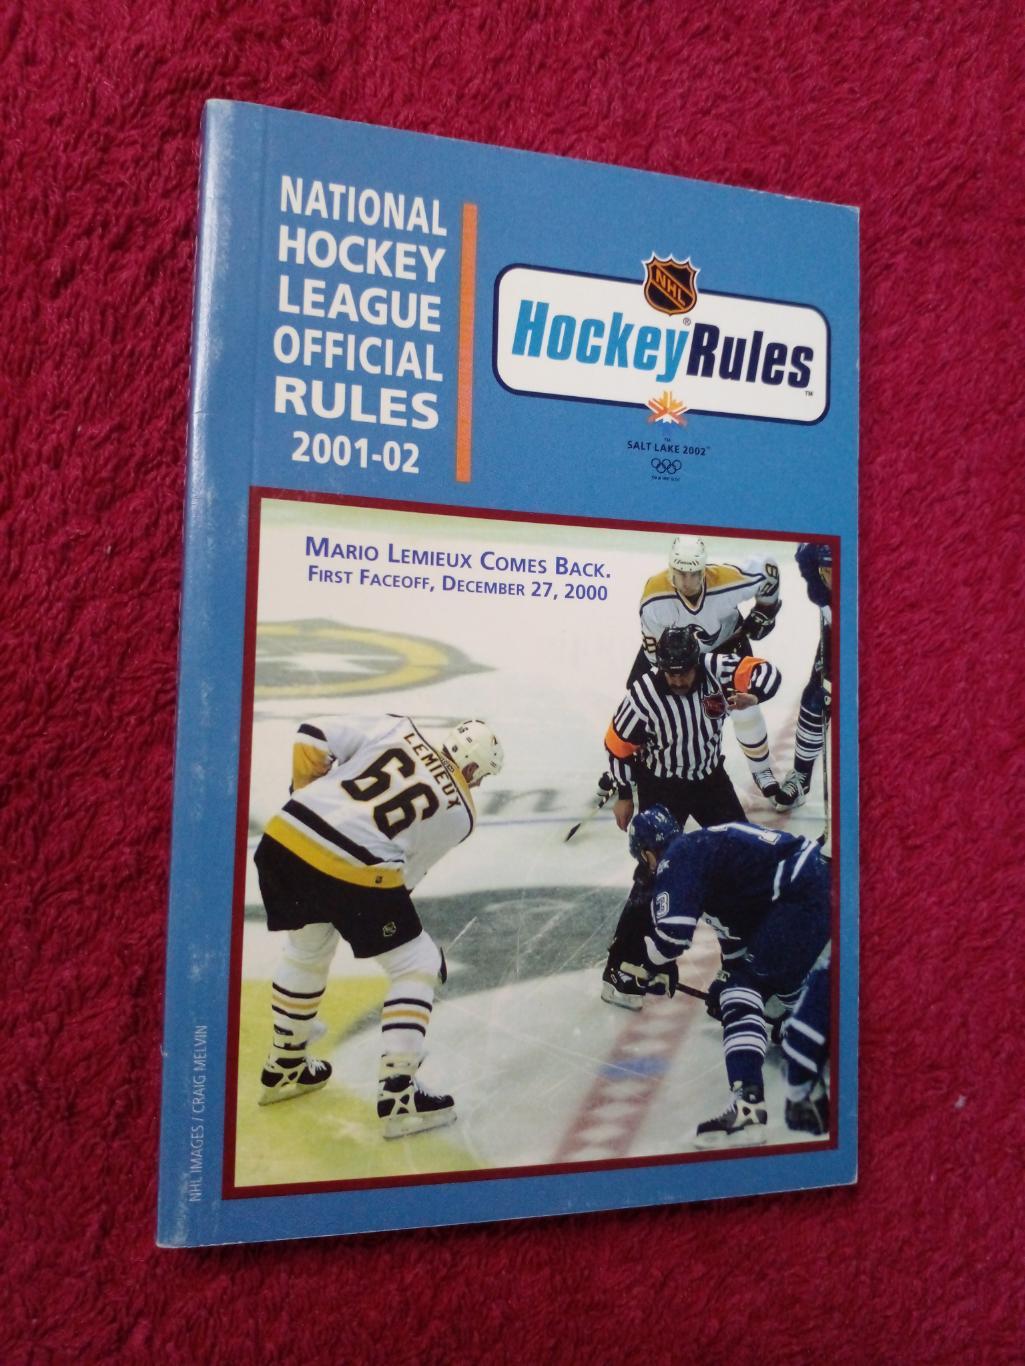 Справочник Хоккей НХЛ OFFICIAL RULES 2001-02. Обложка - Марио Лемье